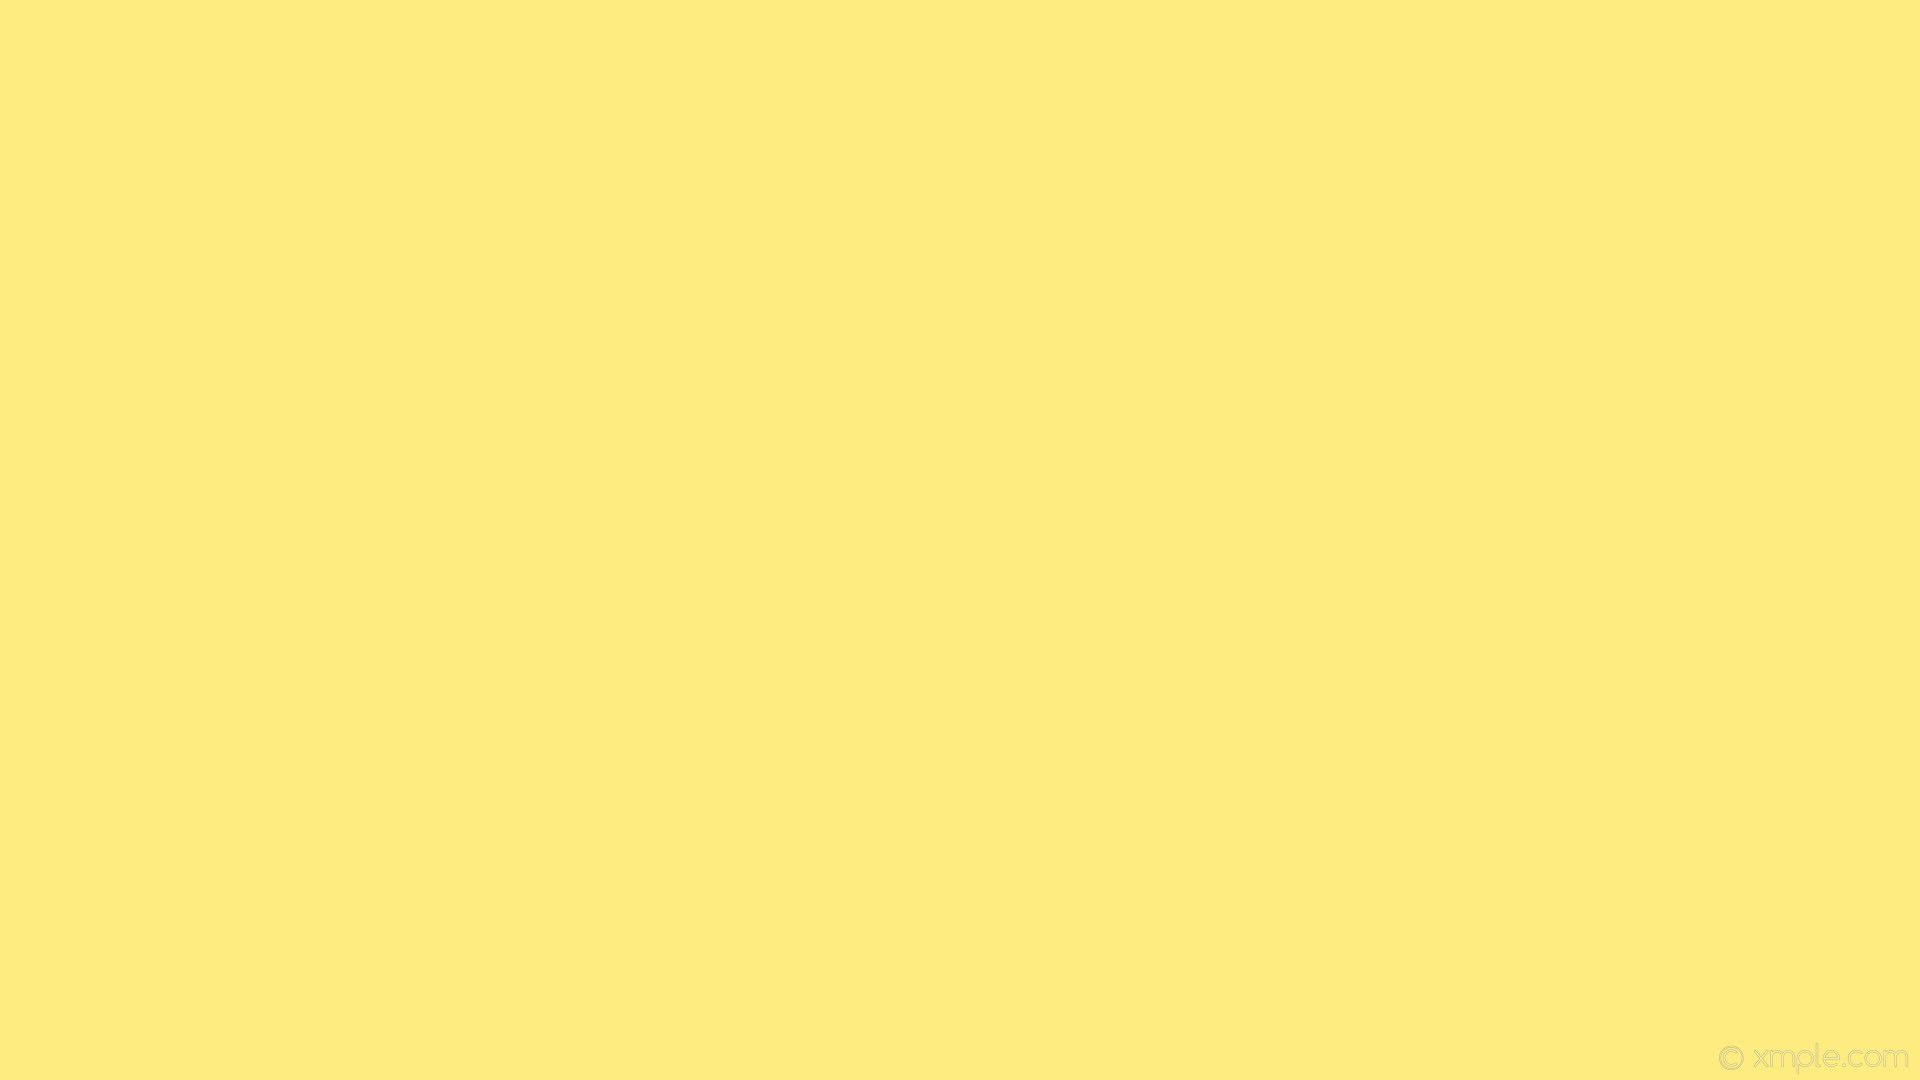 Hermosa Rosa Pastel Amarillo Rojo Naranja Azul Verde Fondo Abstracto Blanco  Para El Diseño Con Un Hermoso Brillo Centelleante Bokeh Fotos retratos  imágenes y fotografía de archivo libres de derecho Image 42186322